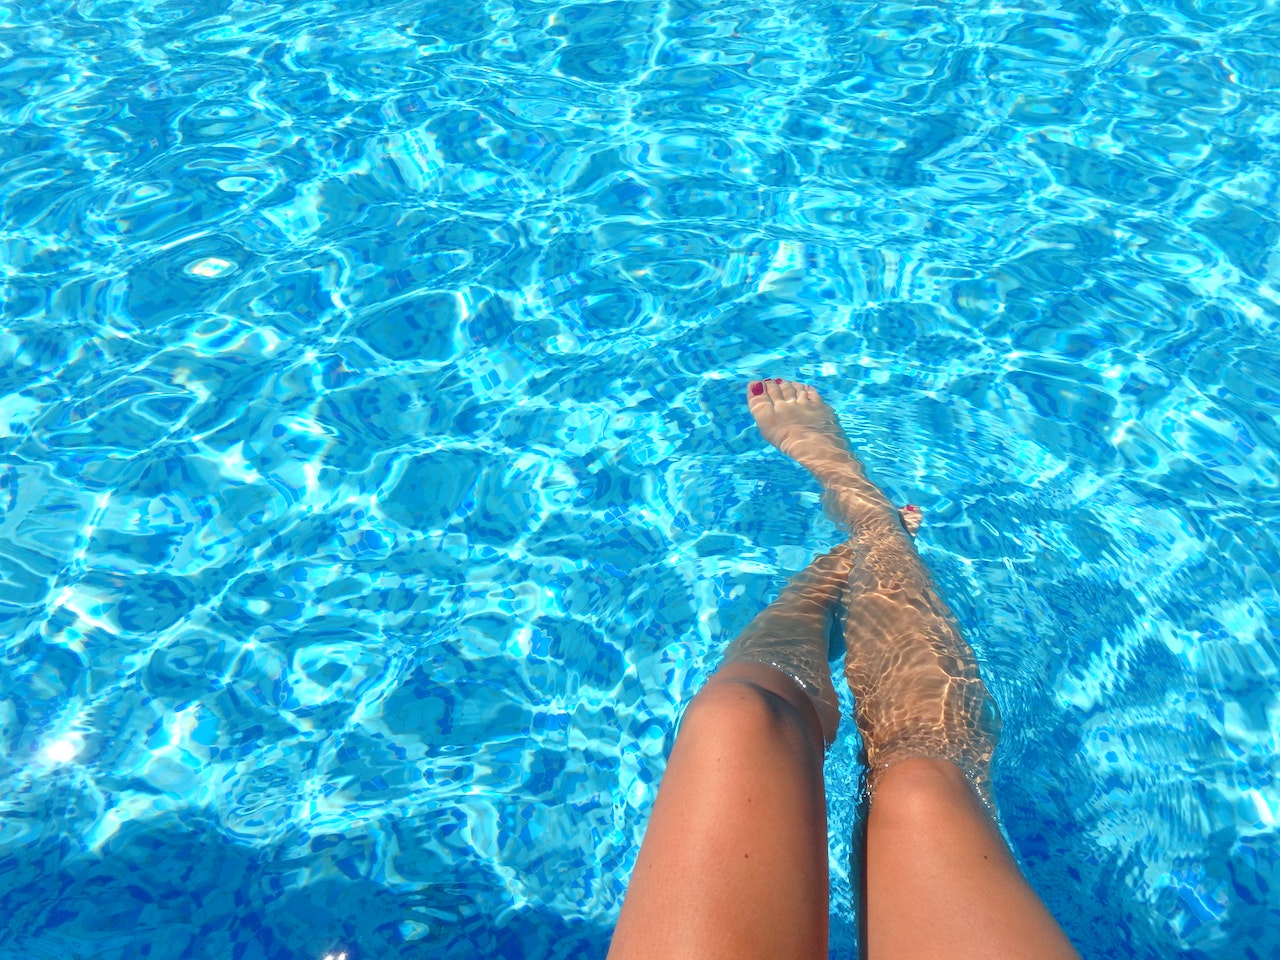 Πώς να αφαιρέσεις εύκολα κι αποτελεσματικά τη γύρη από την πισίνα σου